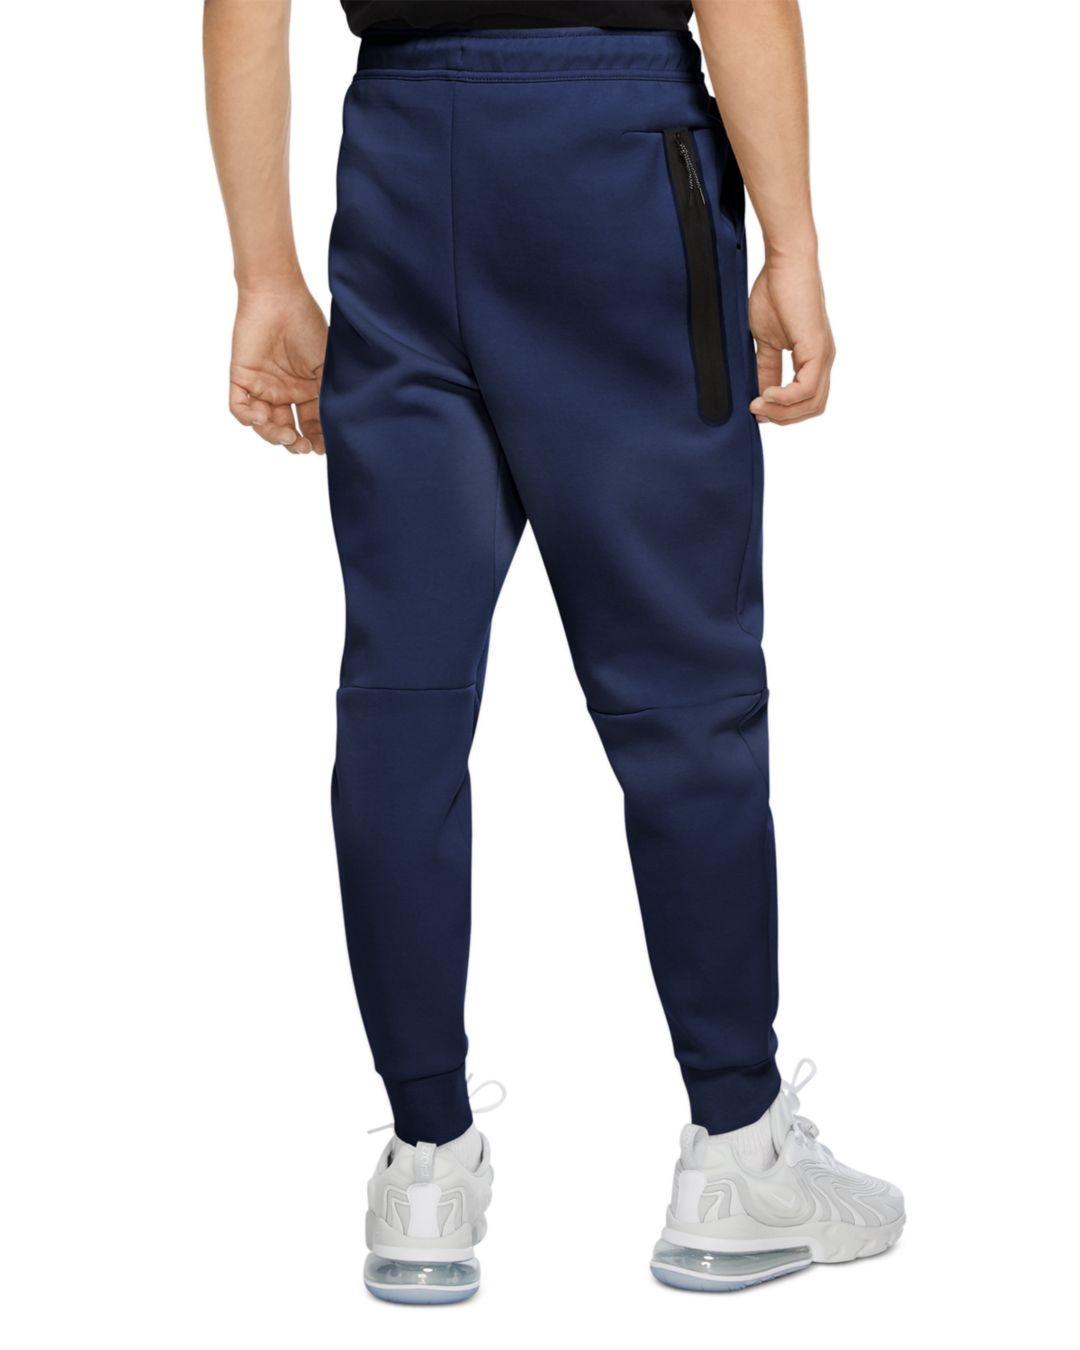 Nike Sportswear Slim Fit Tech Fleece Jogger Pants in Midnight Navy ...